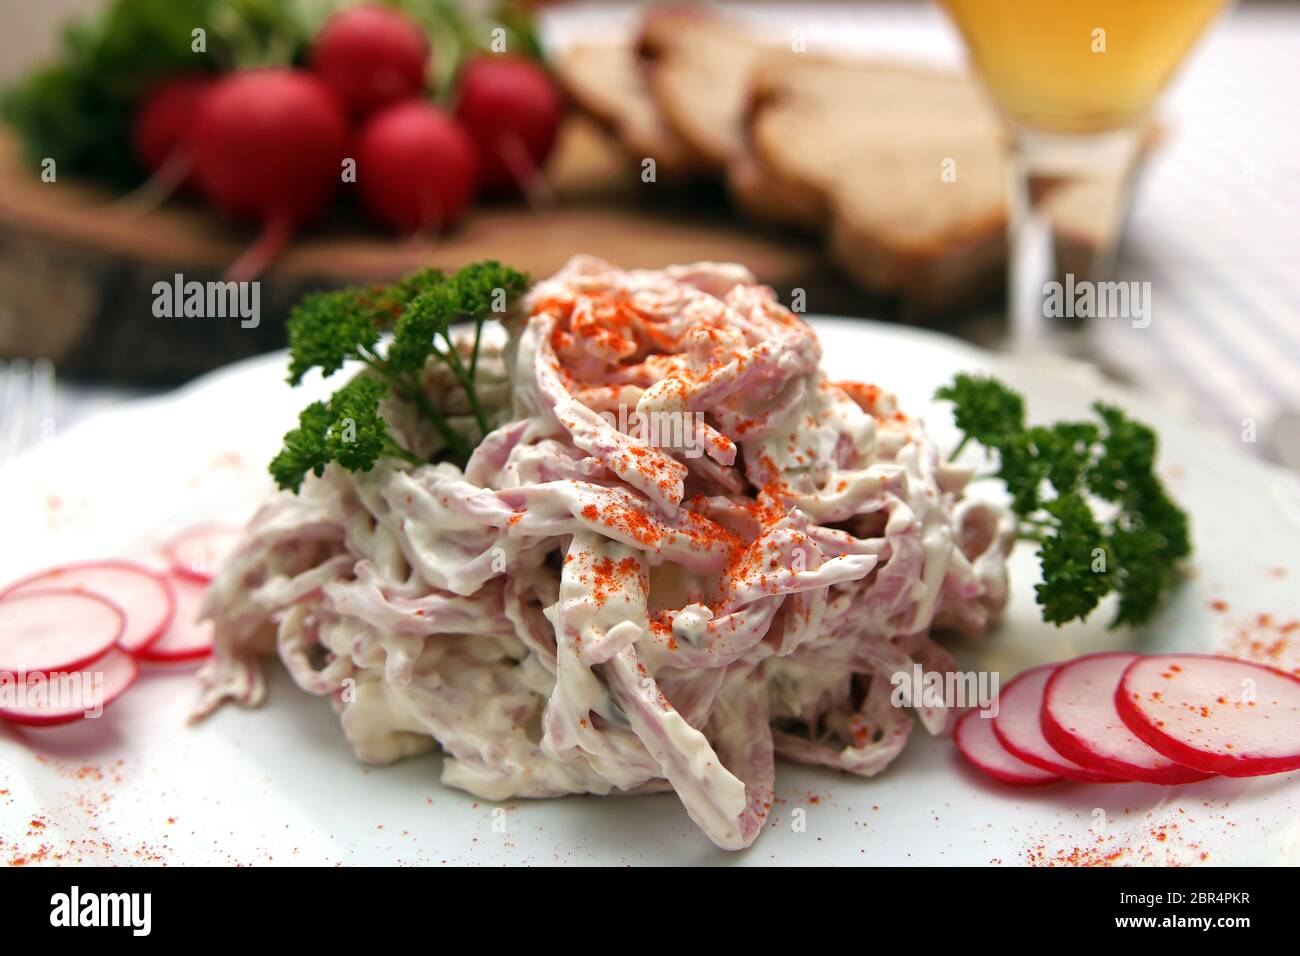 Wurstsalat mit Mayonnaise Stock Photo - Alamy